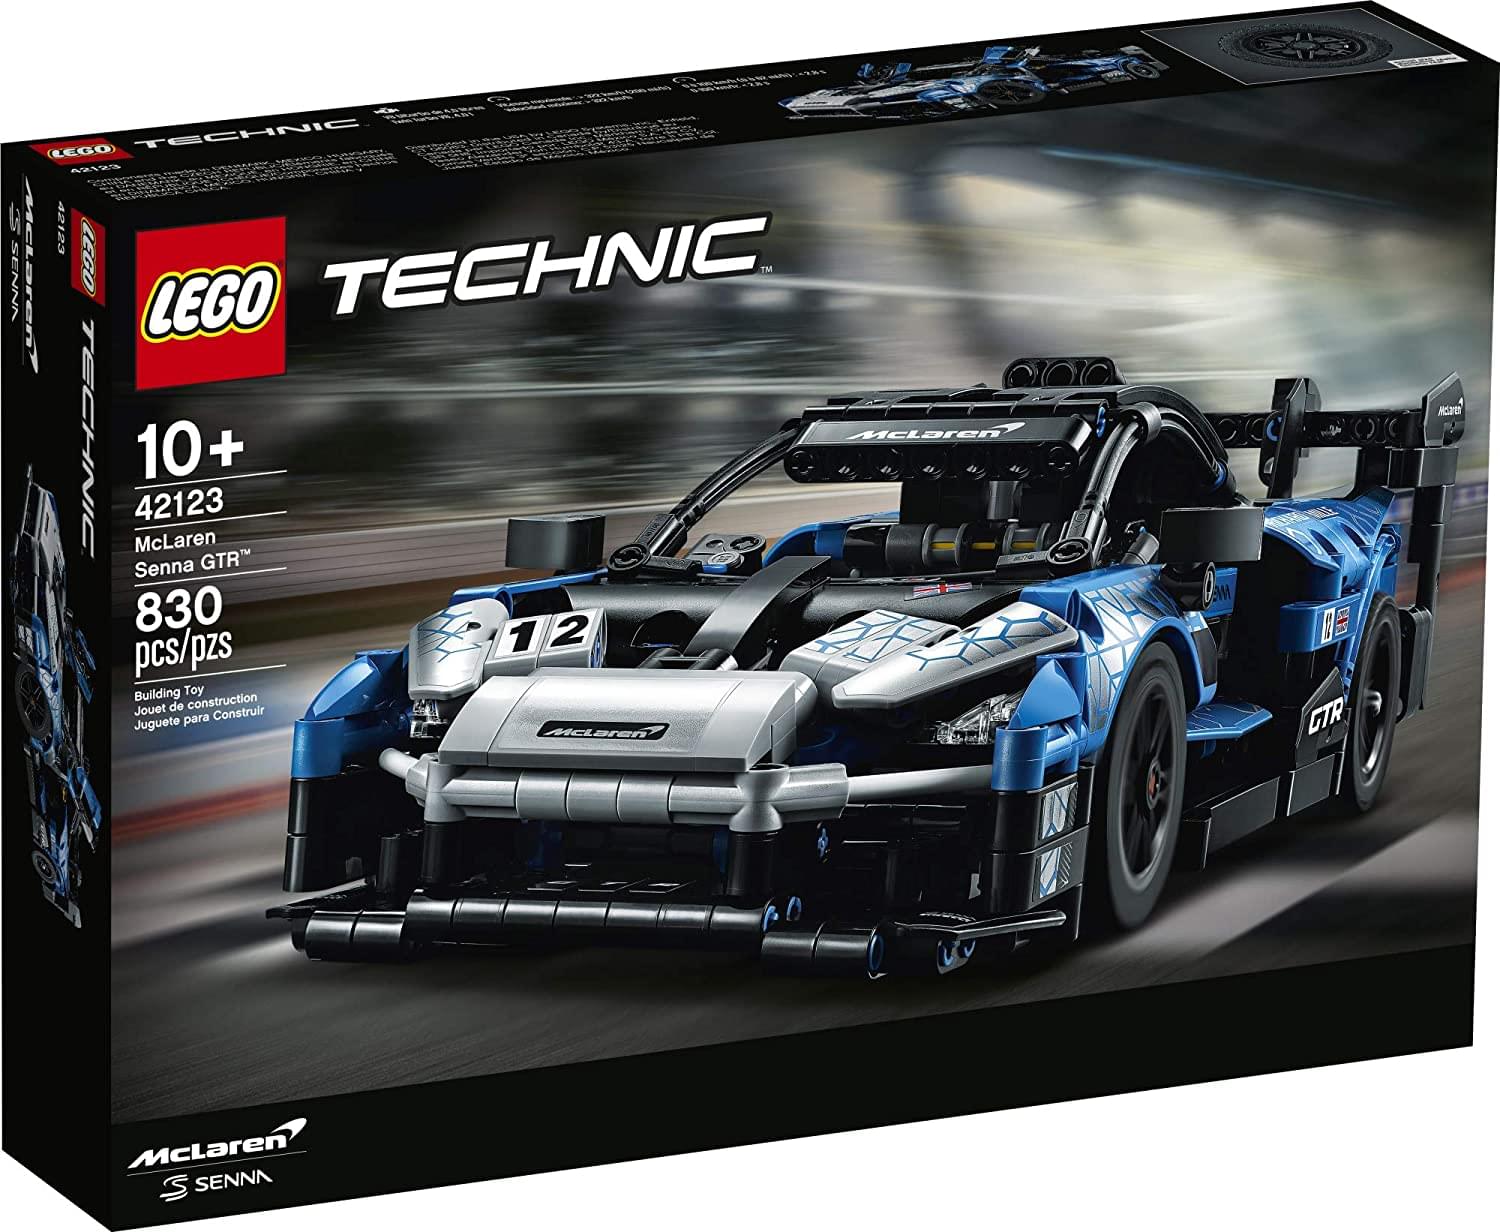 LEGO Technic 42123 McLaren Senna GTR 830 Piece Building Kit